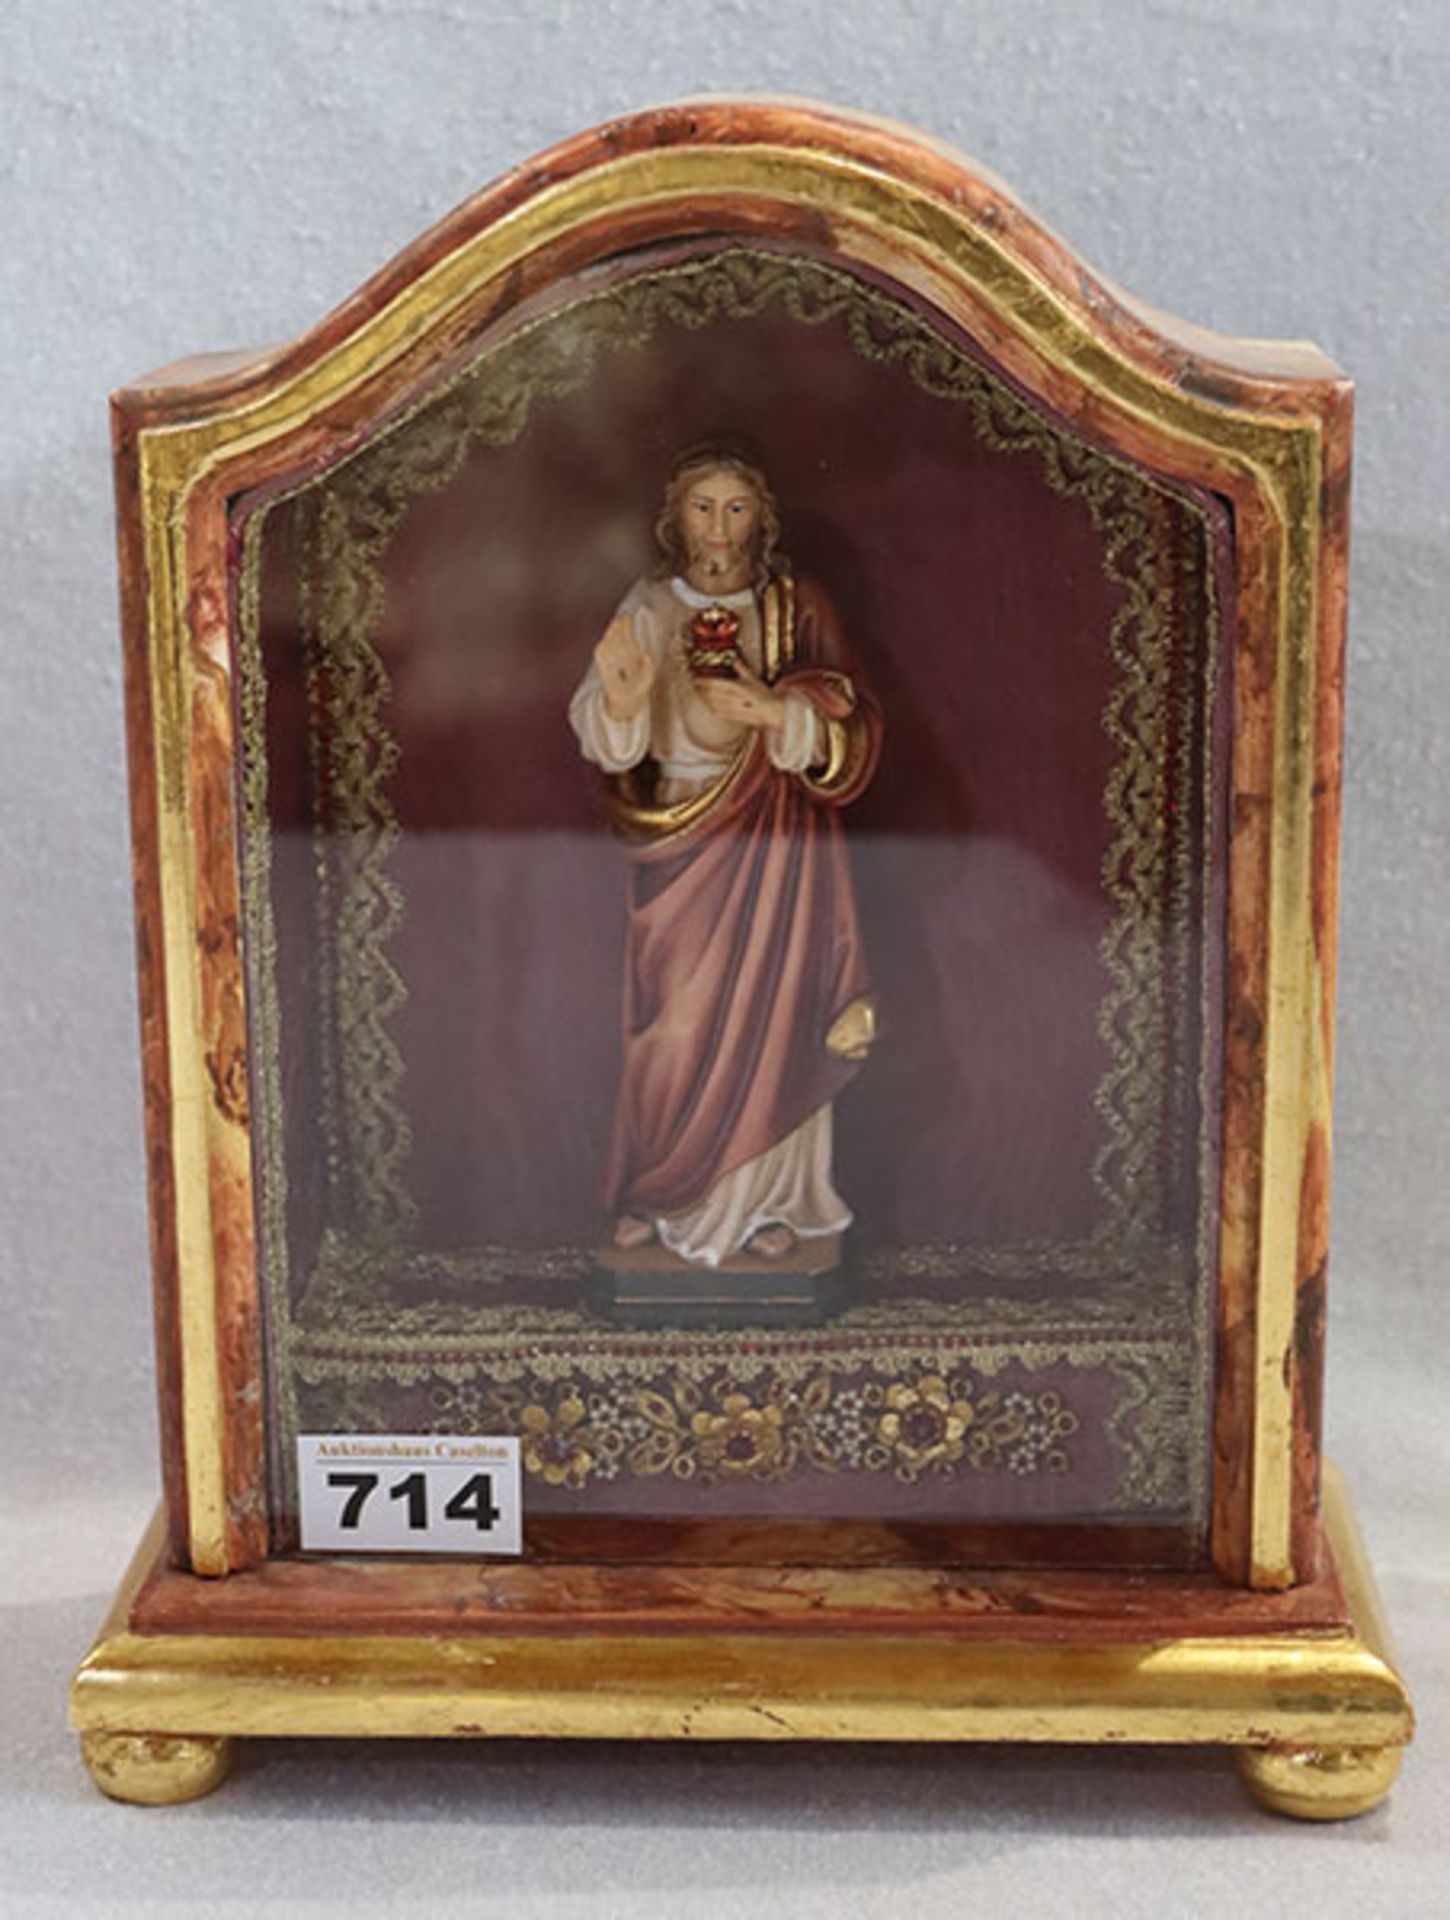 Klosterarbeit mit Holzfigur 'Herz-Jesus', farbig gefaßt, in verglasten Kasten, schön verziert, H